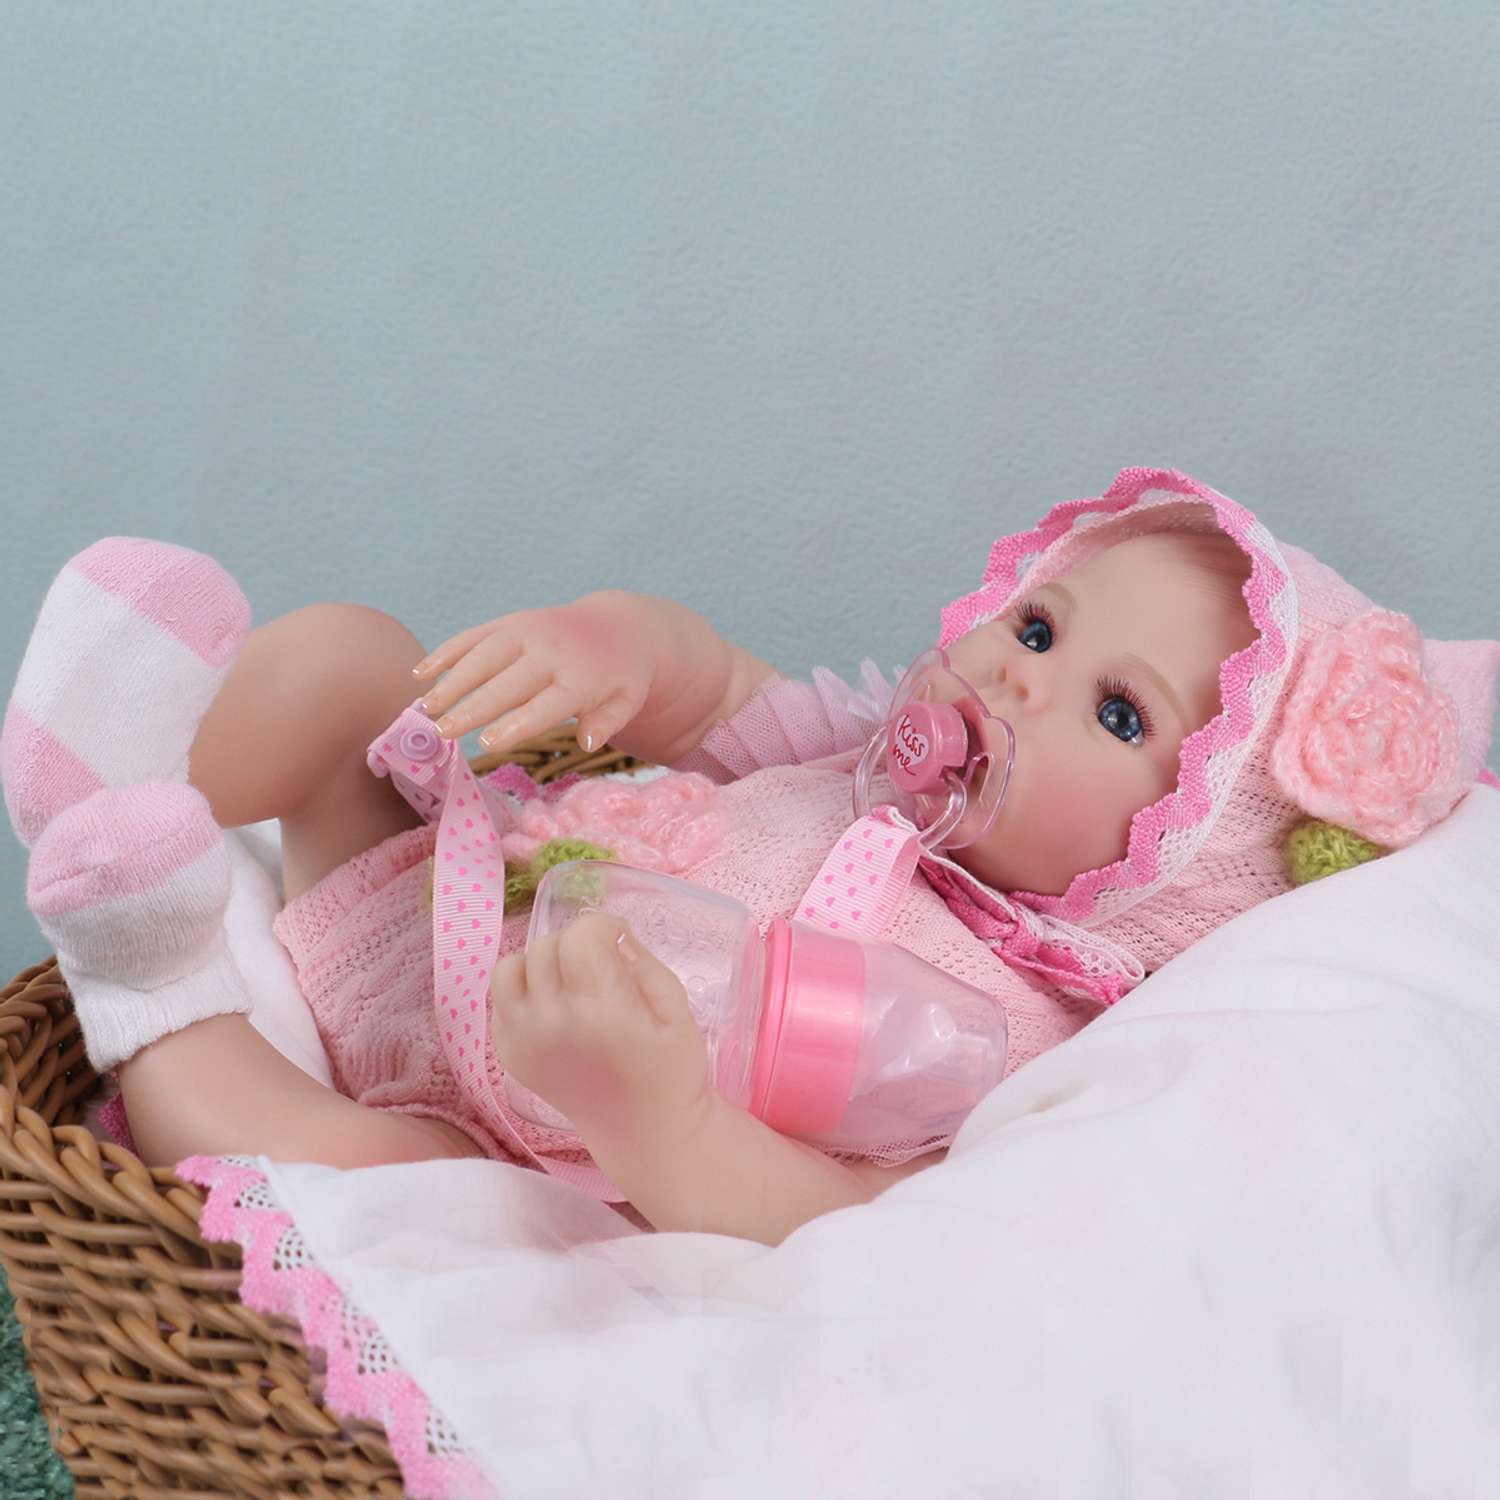 Кукла Реборн QA BABY Ксения пупс с соской набор игрушки для девочки 45 см 42002 - фото 7